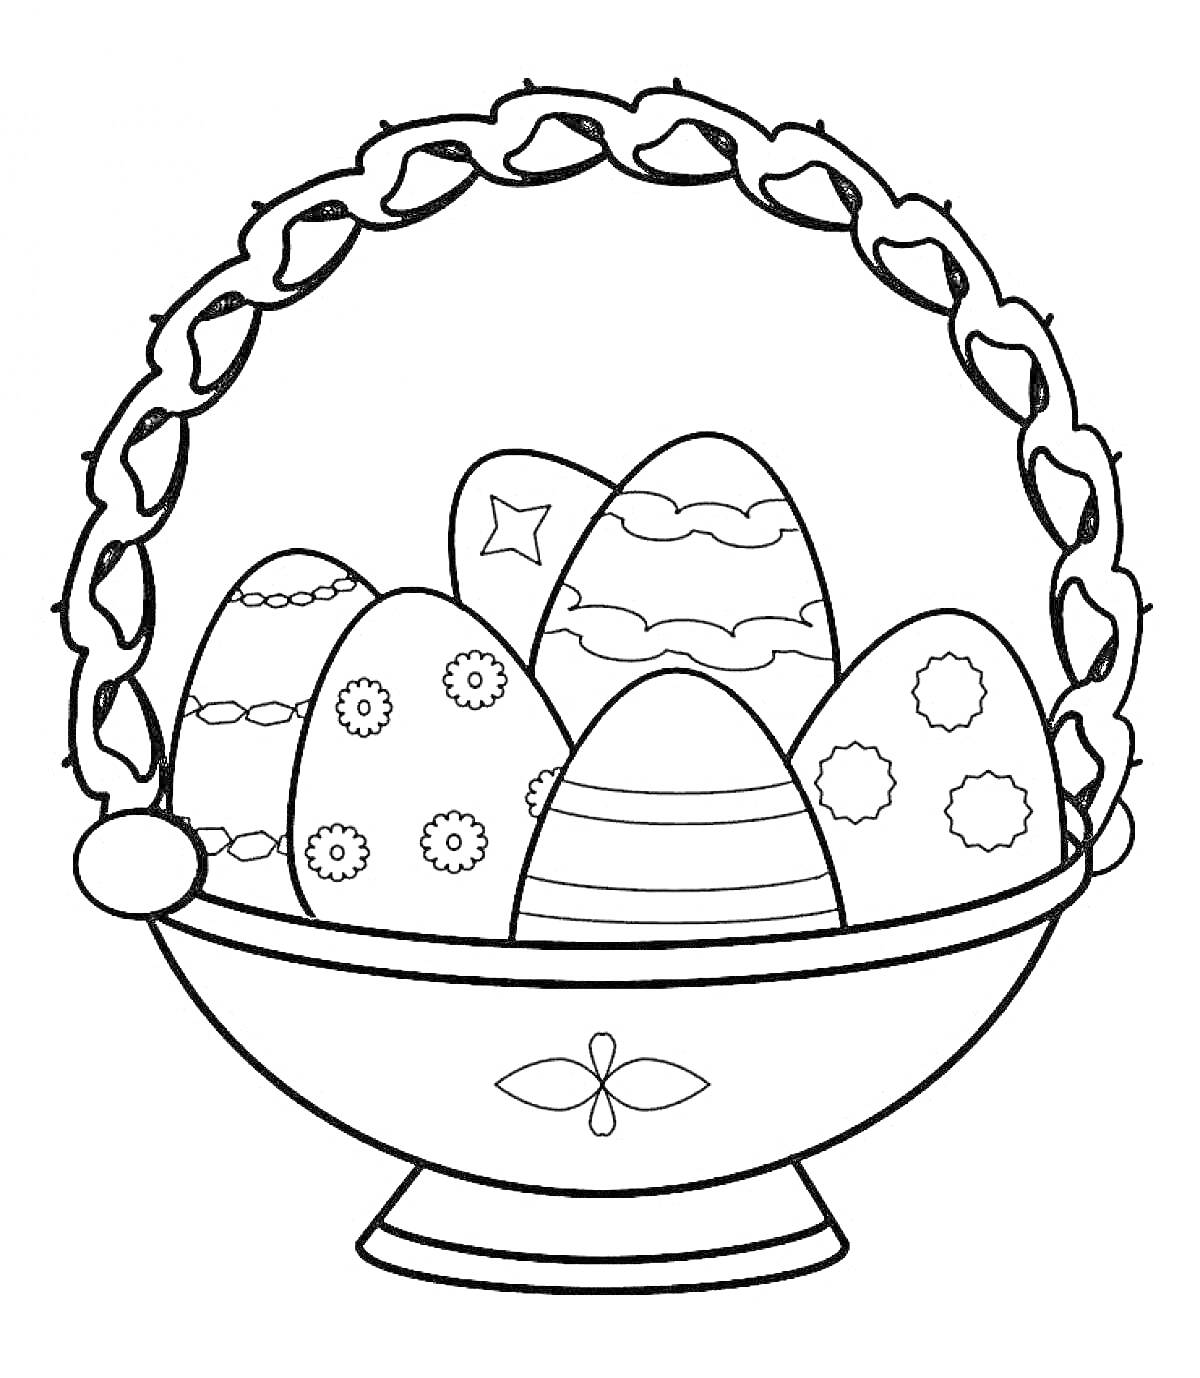 Раскраска Пасхальная корзина с расписными яйцами